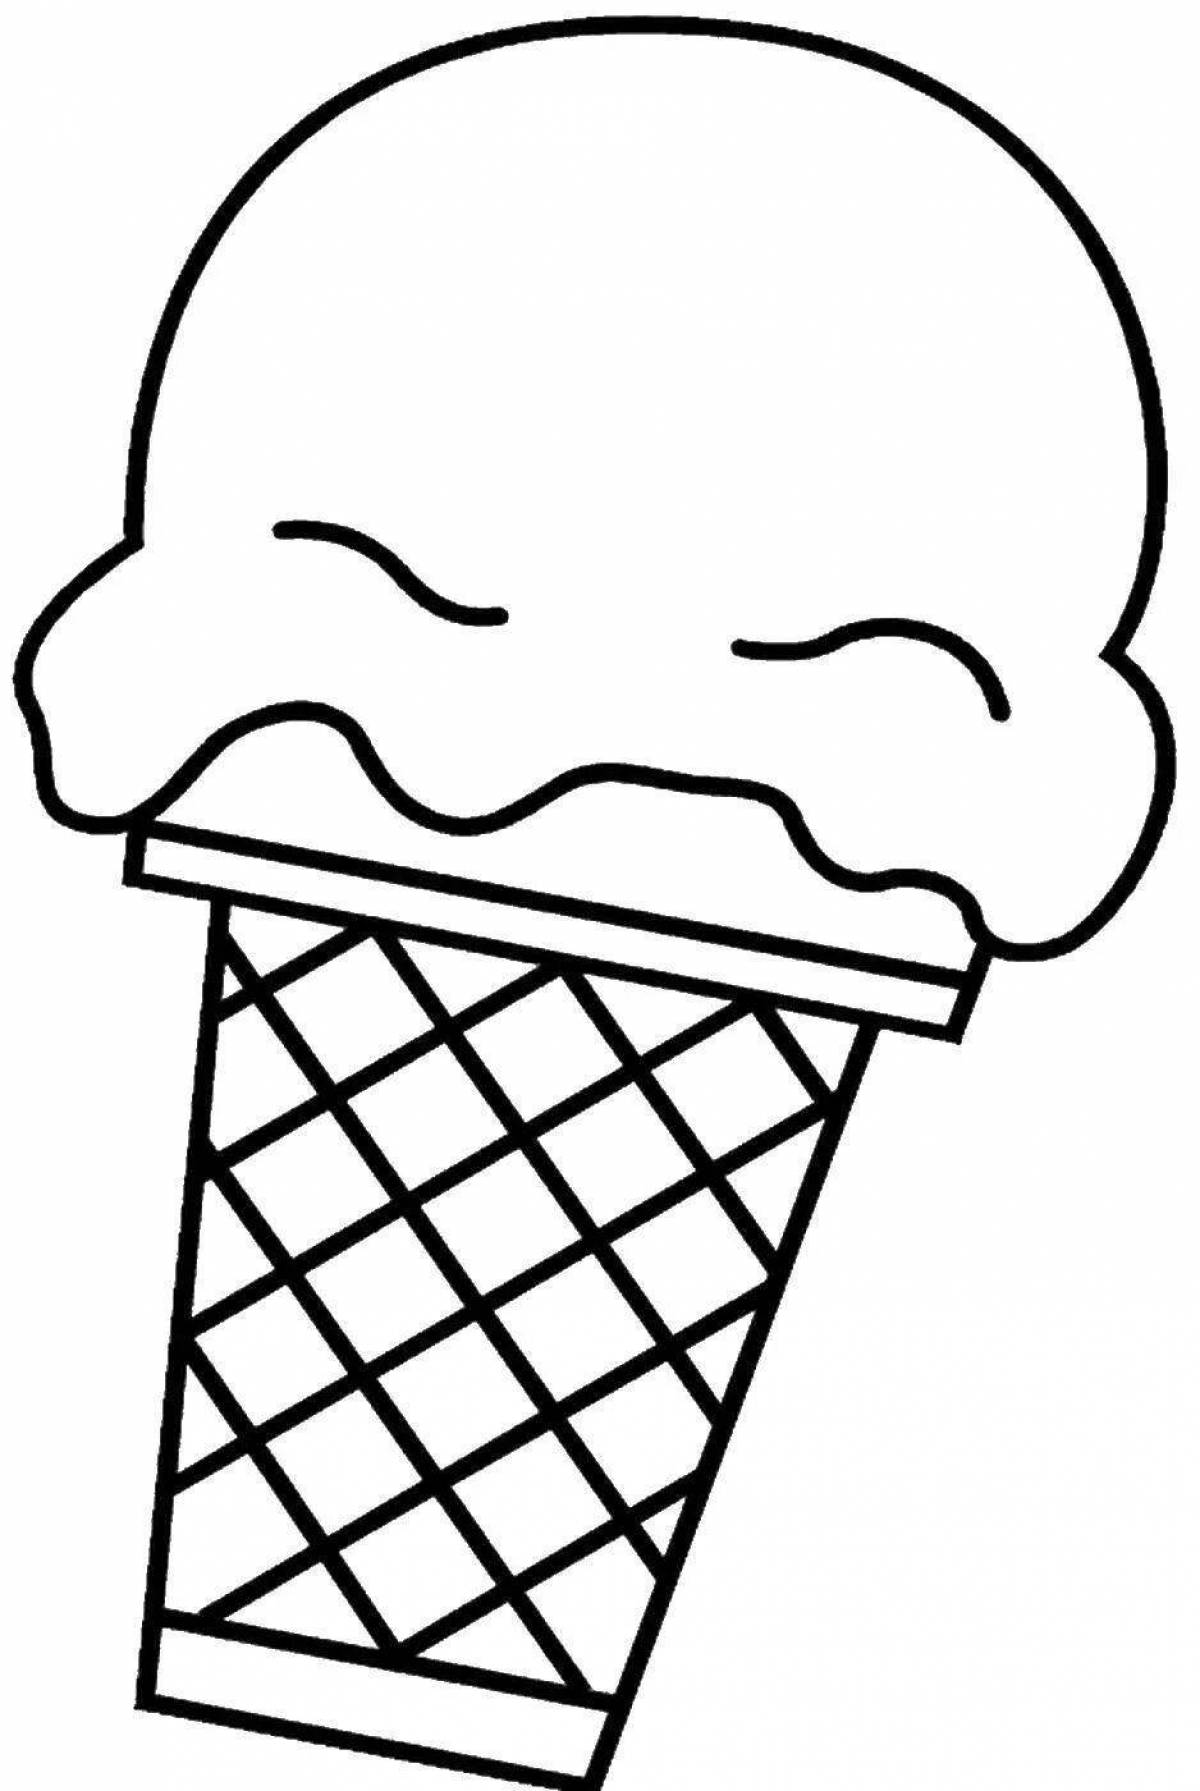 Раскраска мороженки. Мороженщик айс Крим раскраска. Мороженое раскраска для детей. Мороженое рожок раскраска для детей. Мороженое трафарет.